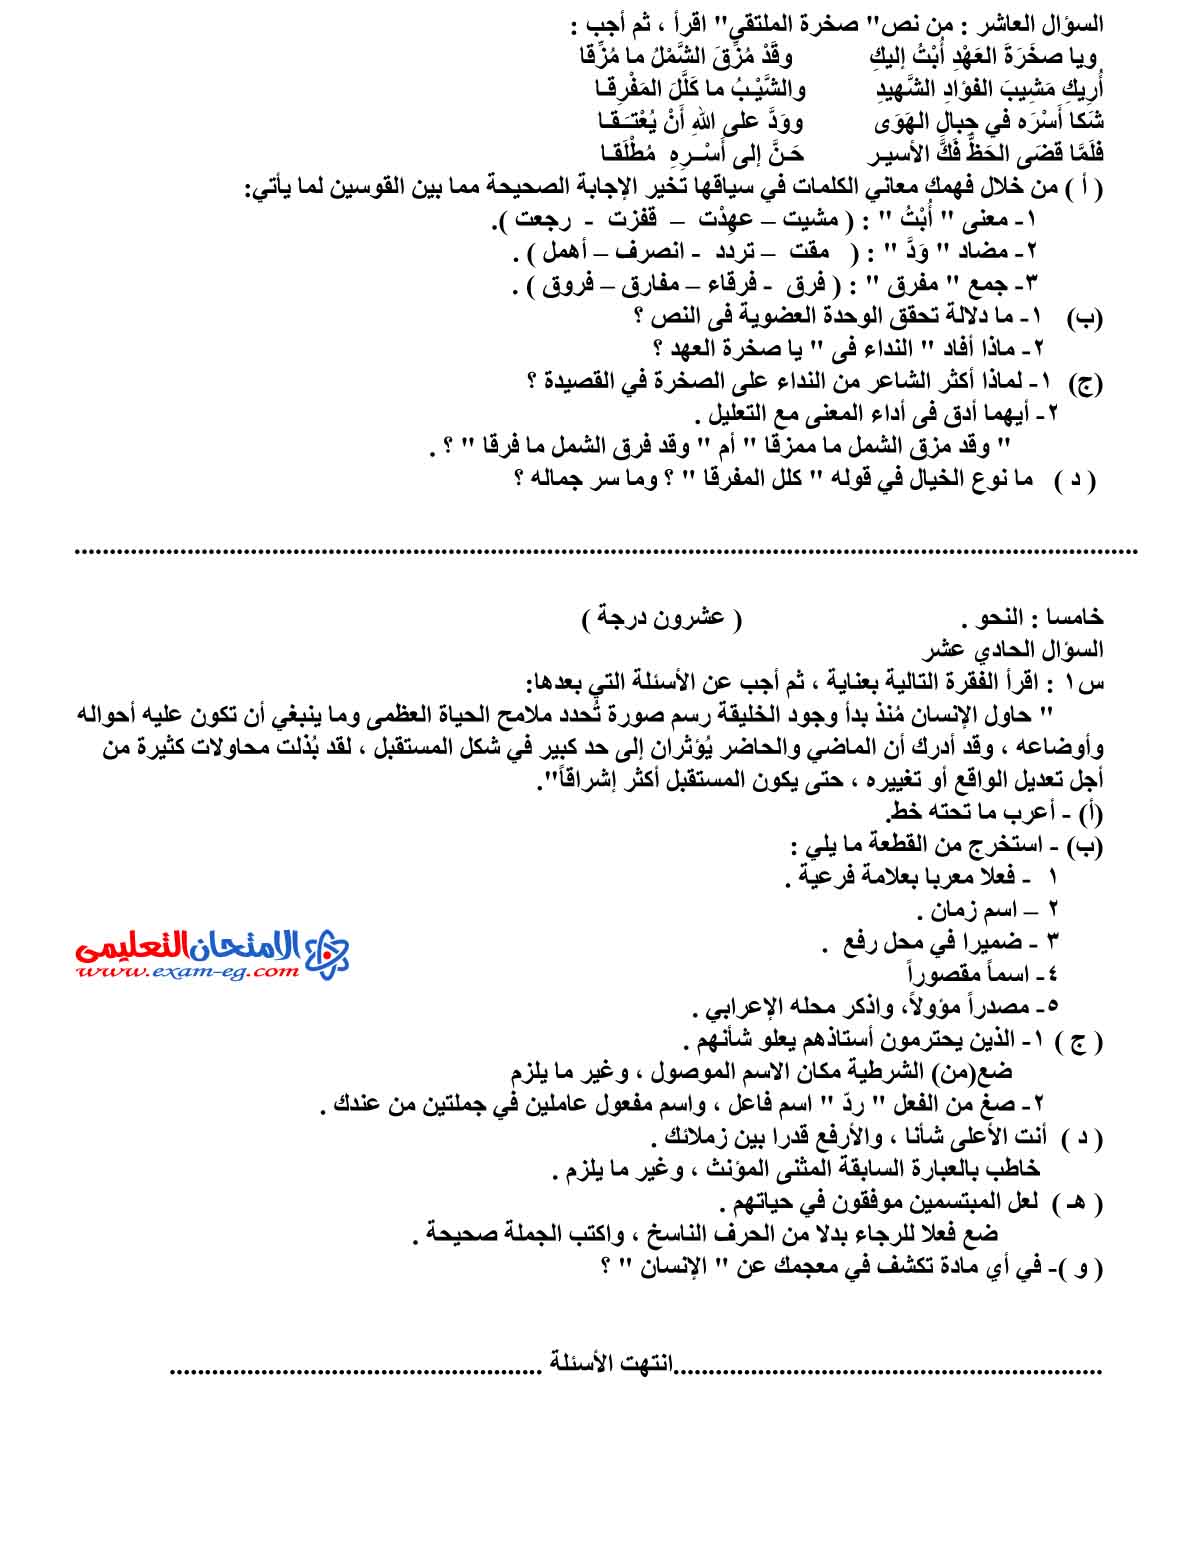 امتحان اللغة العربية 4 - مدرسة اون لاين (4)